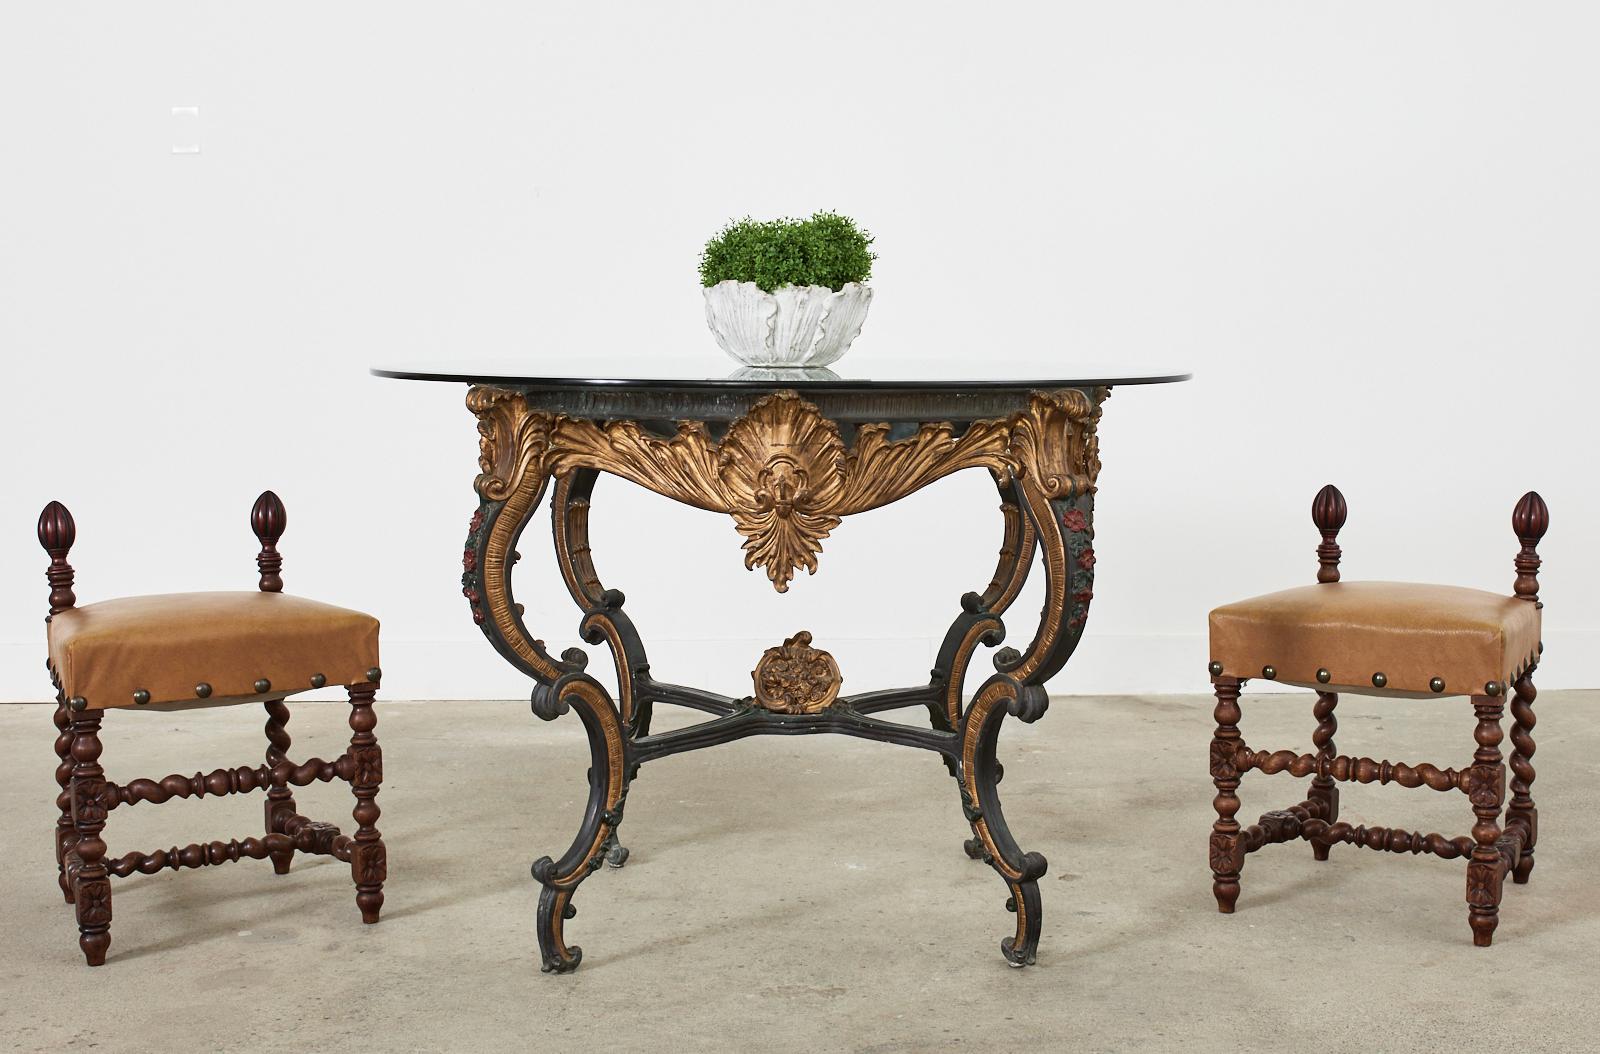 Opulent guéridon ou centre de table italien en bronze massif réalisé dans le grand goût baroque. La table présente une finition dorée parcellaire laquée avec une patine vieillie souhaitable. Chaque côté est centré d'un grand cartouche orné de gerbes